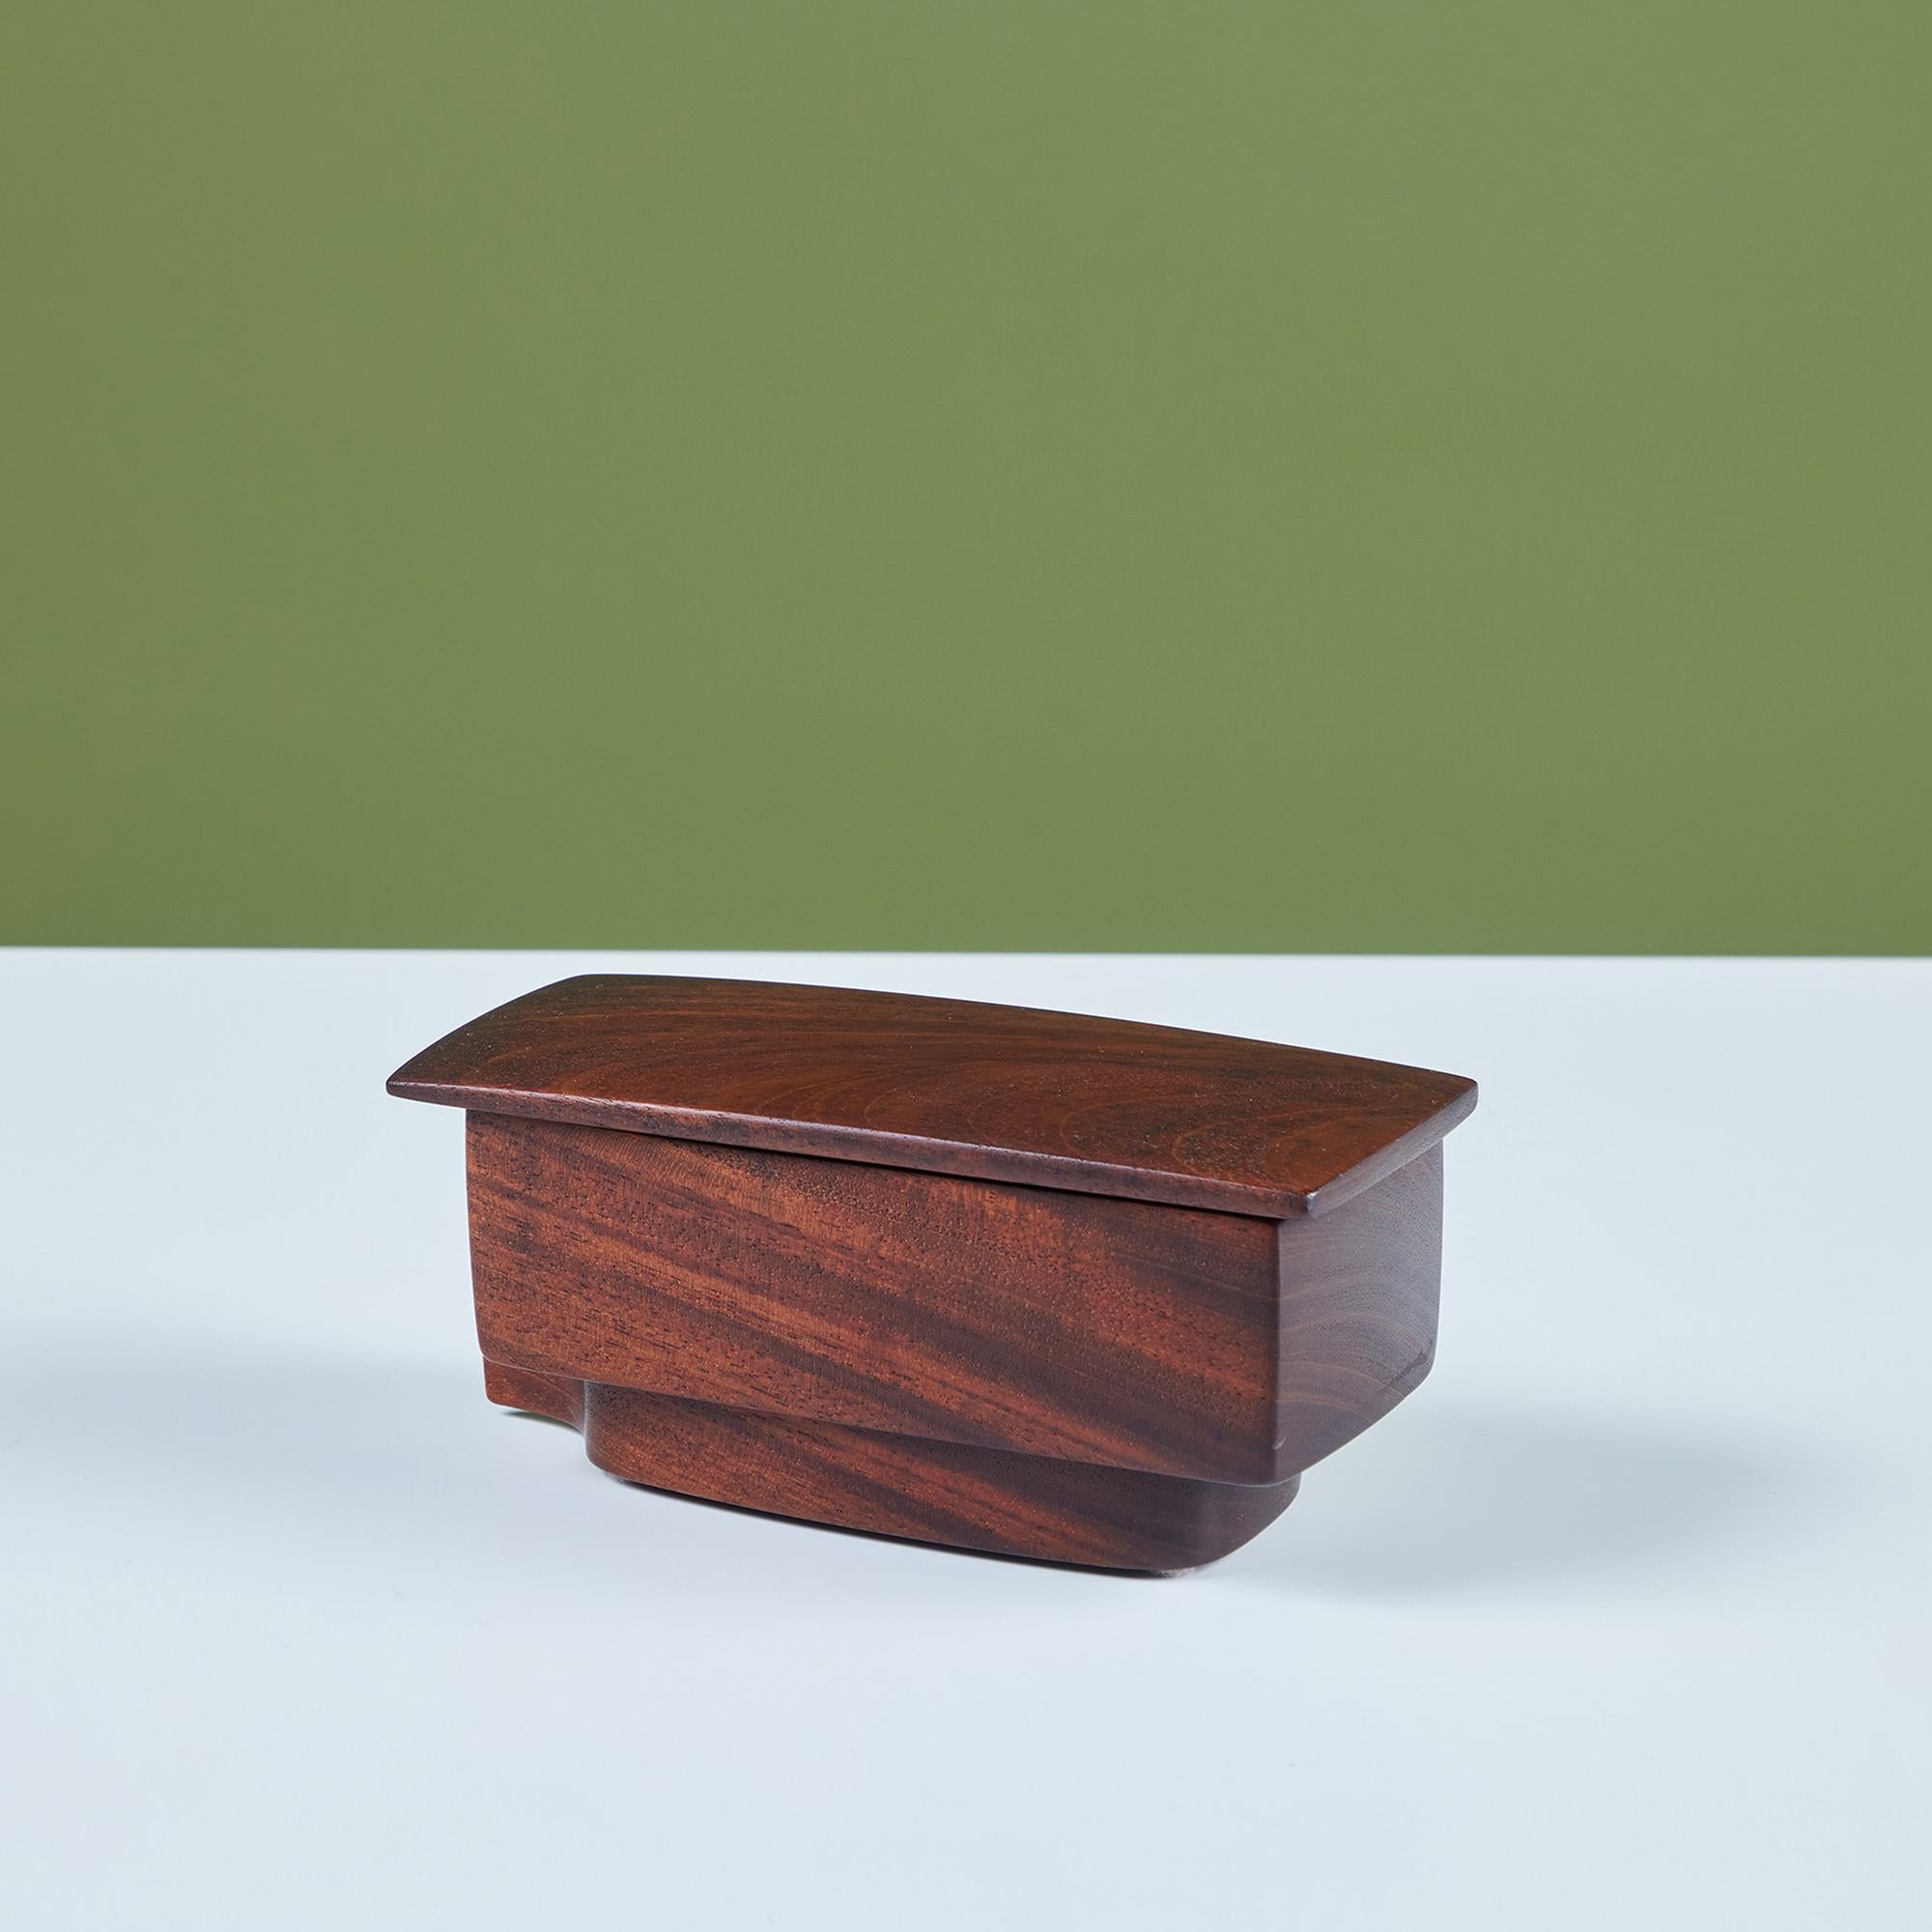 Handgeschnitzte rechteckige Kiste mit Deckel aus Nussbaumholz. Die Box hat ein wunderschönes, von Hand geschwungenes Holzinnere mit einem eingelassenen Boden, der ein lustiges Rillendetail bietet. Signiert vom Künstler - 